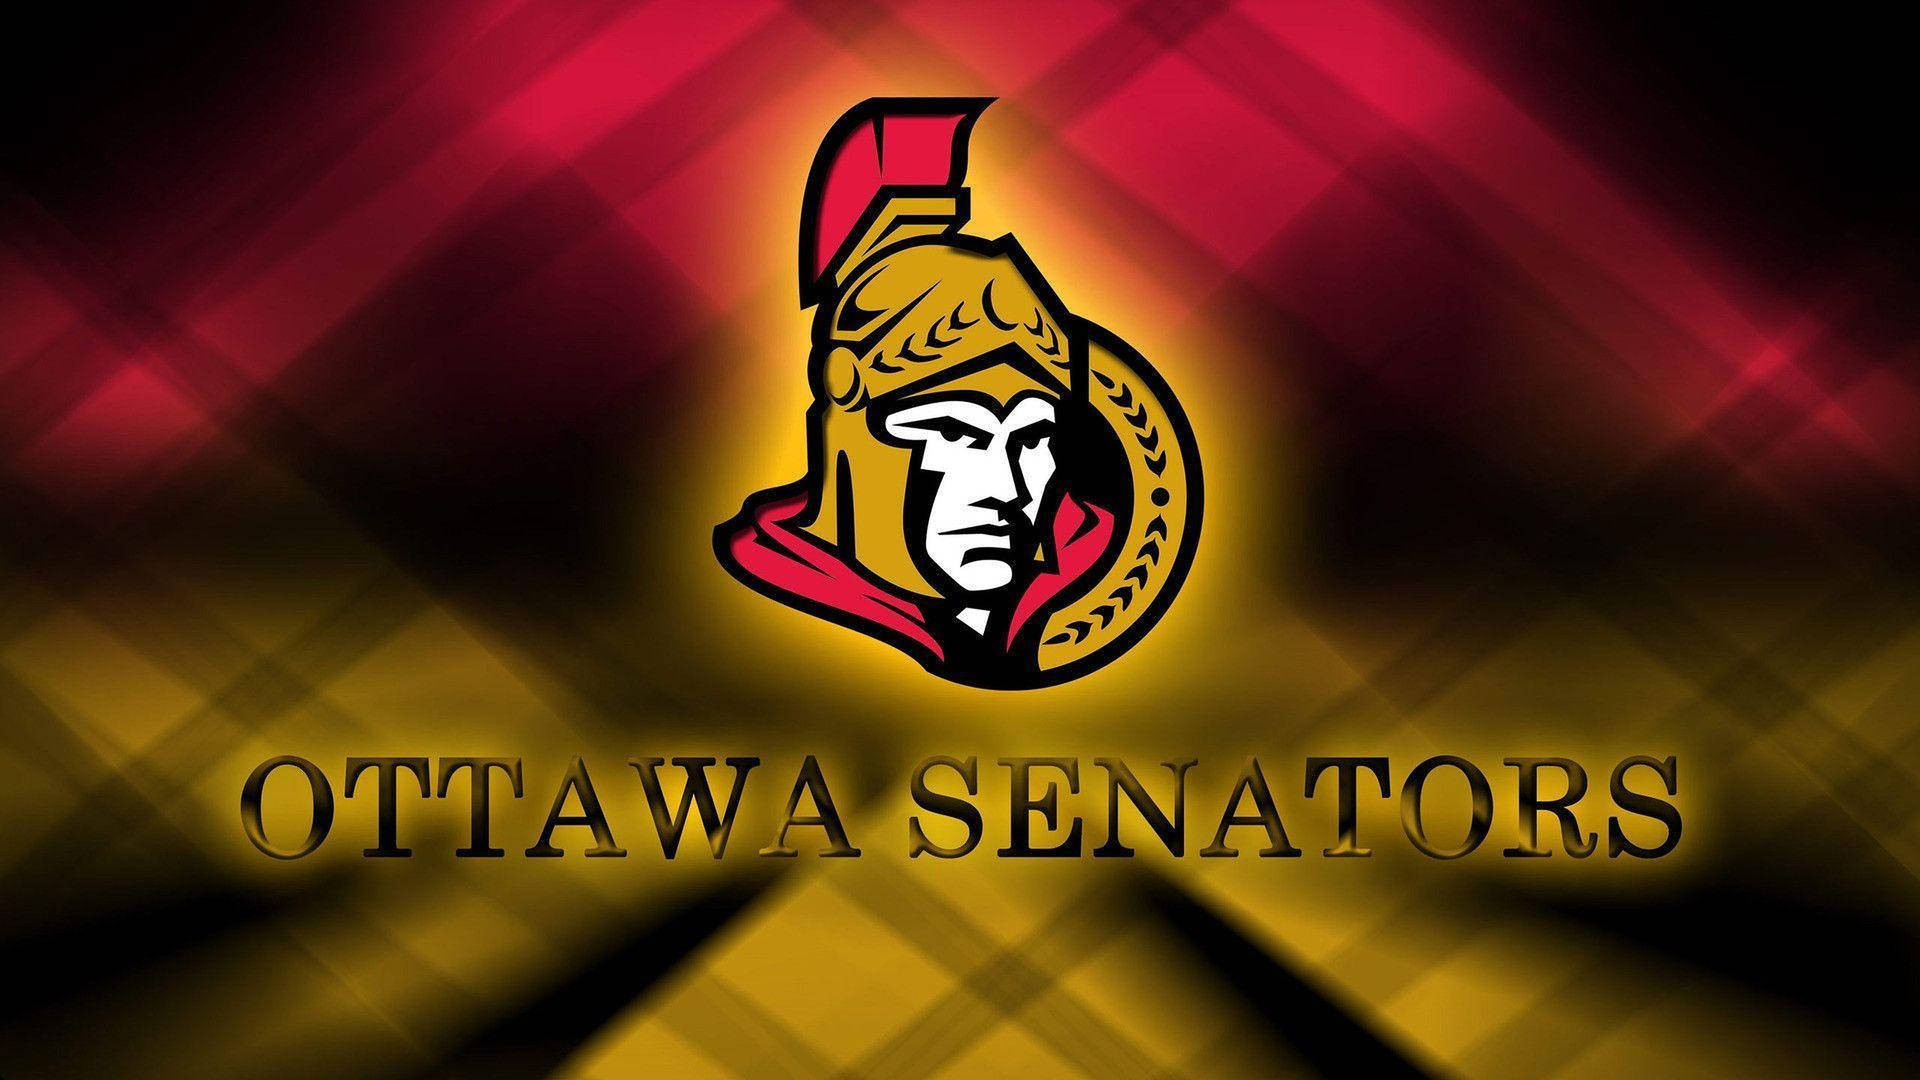 Ottawa Senators Red Yellow Lights